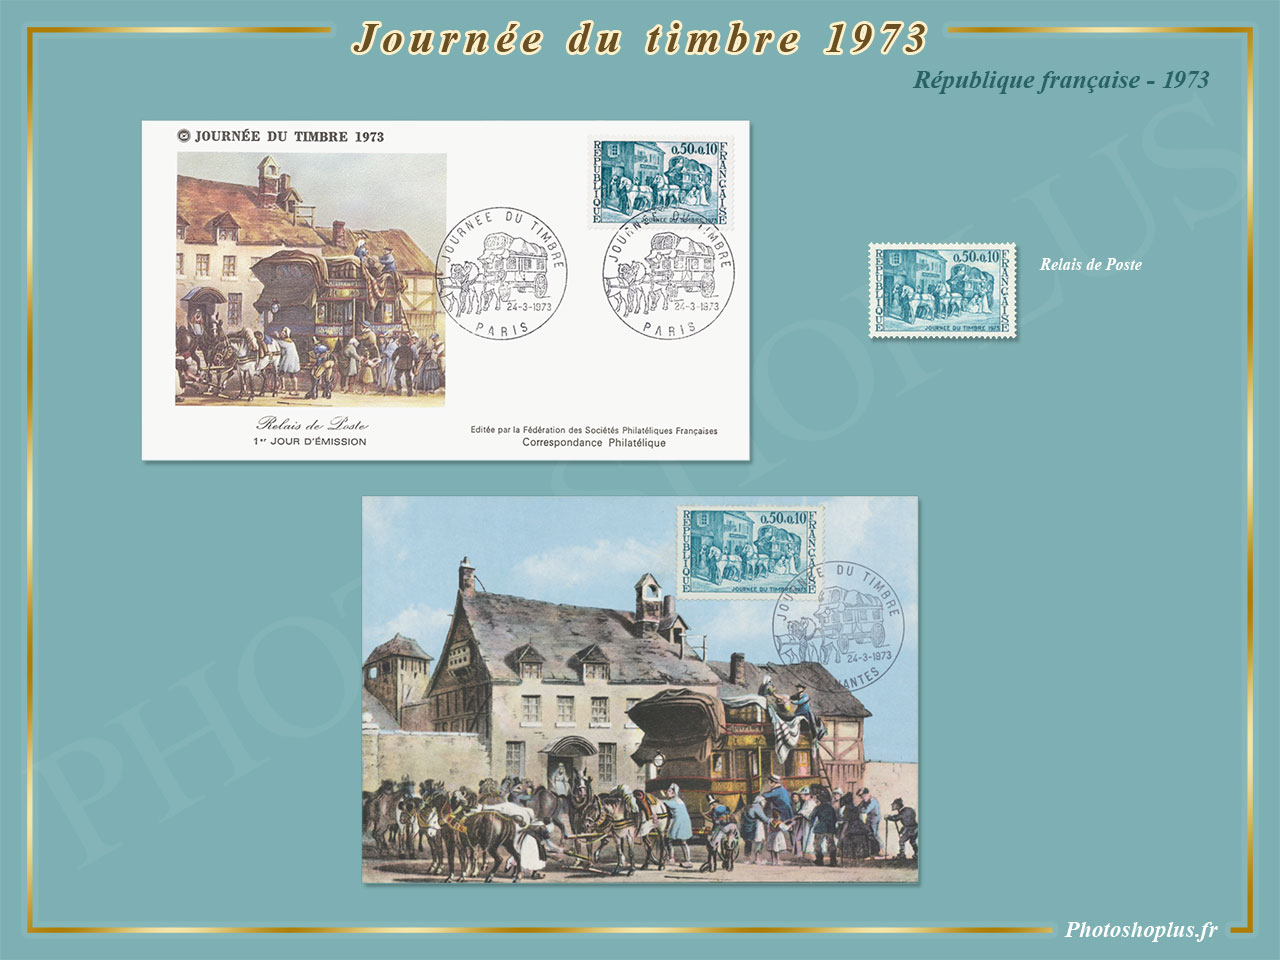 Journée du timbre 1973